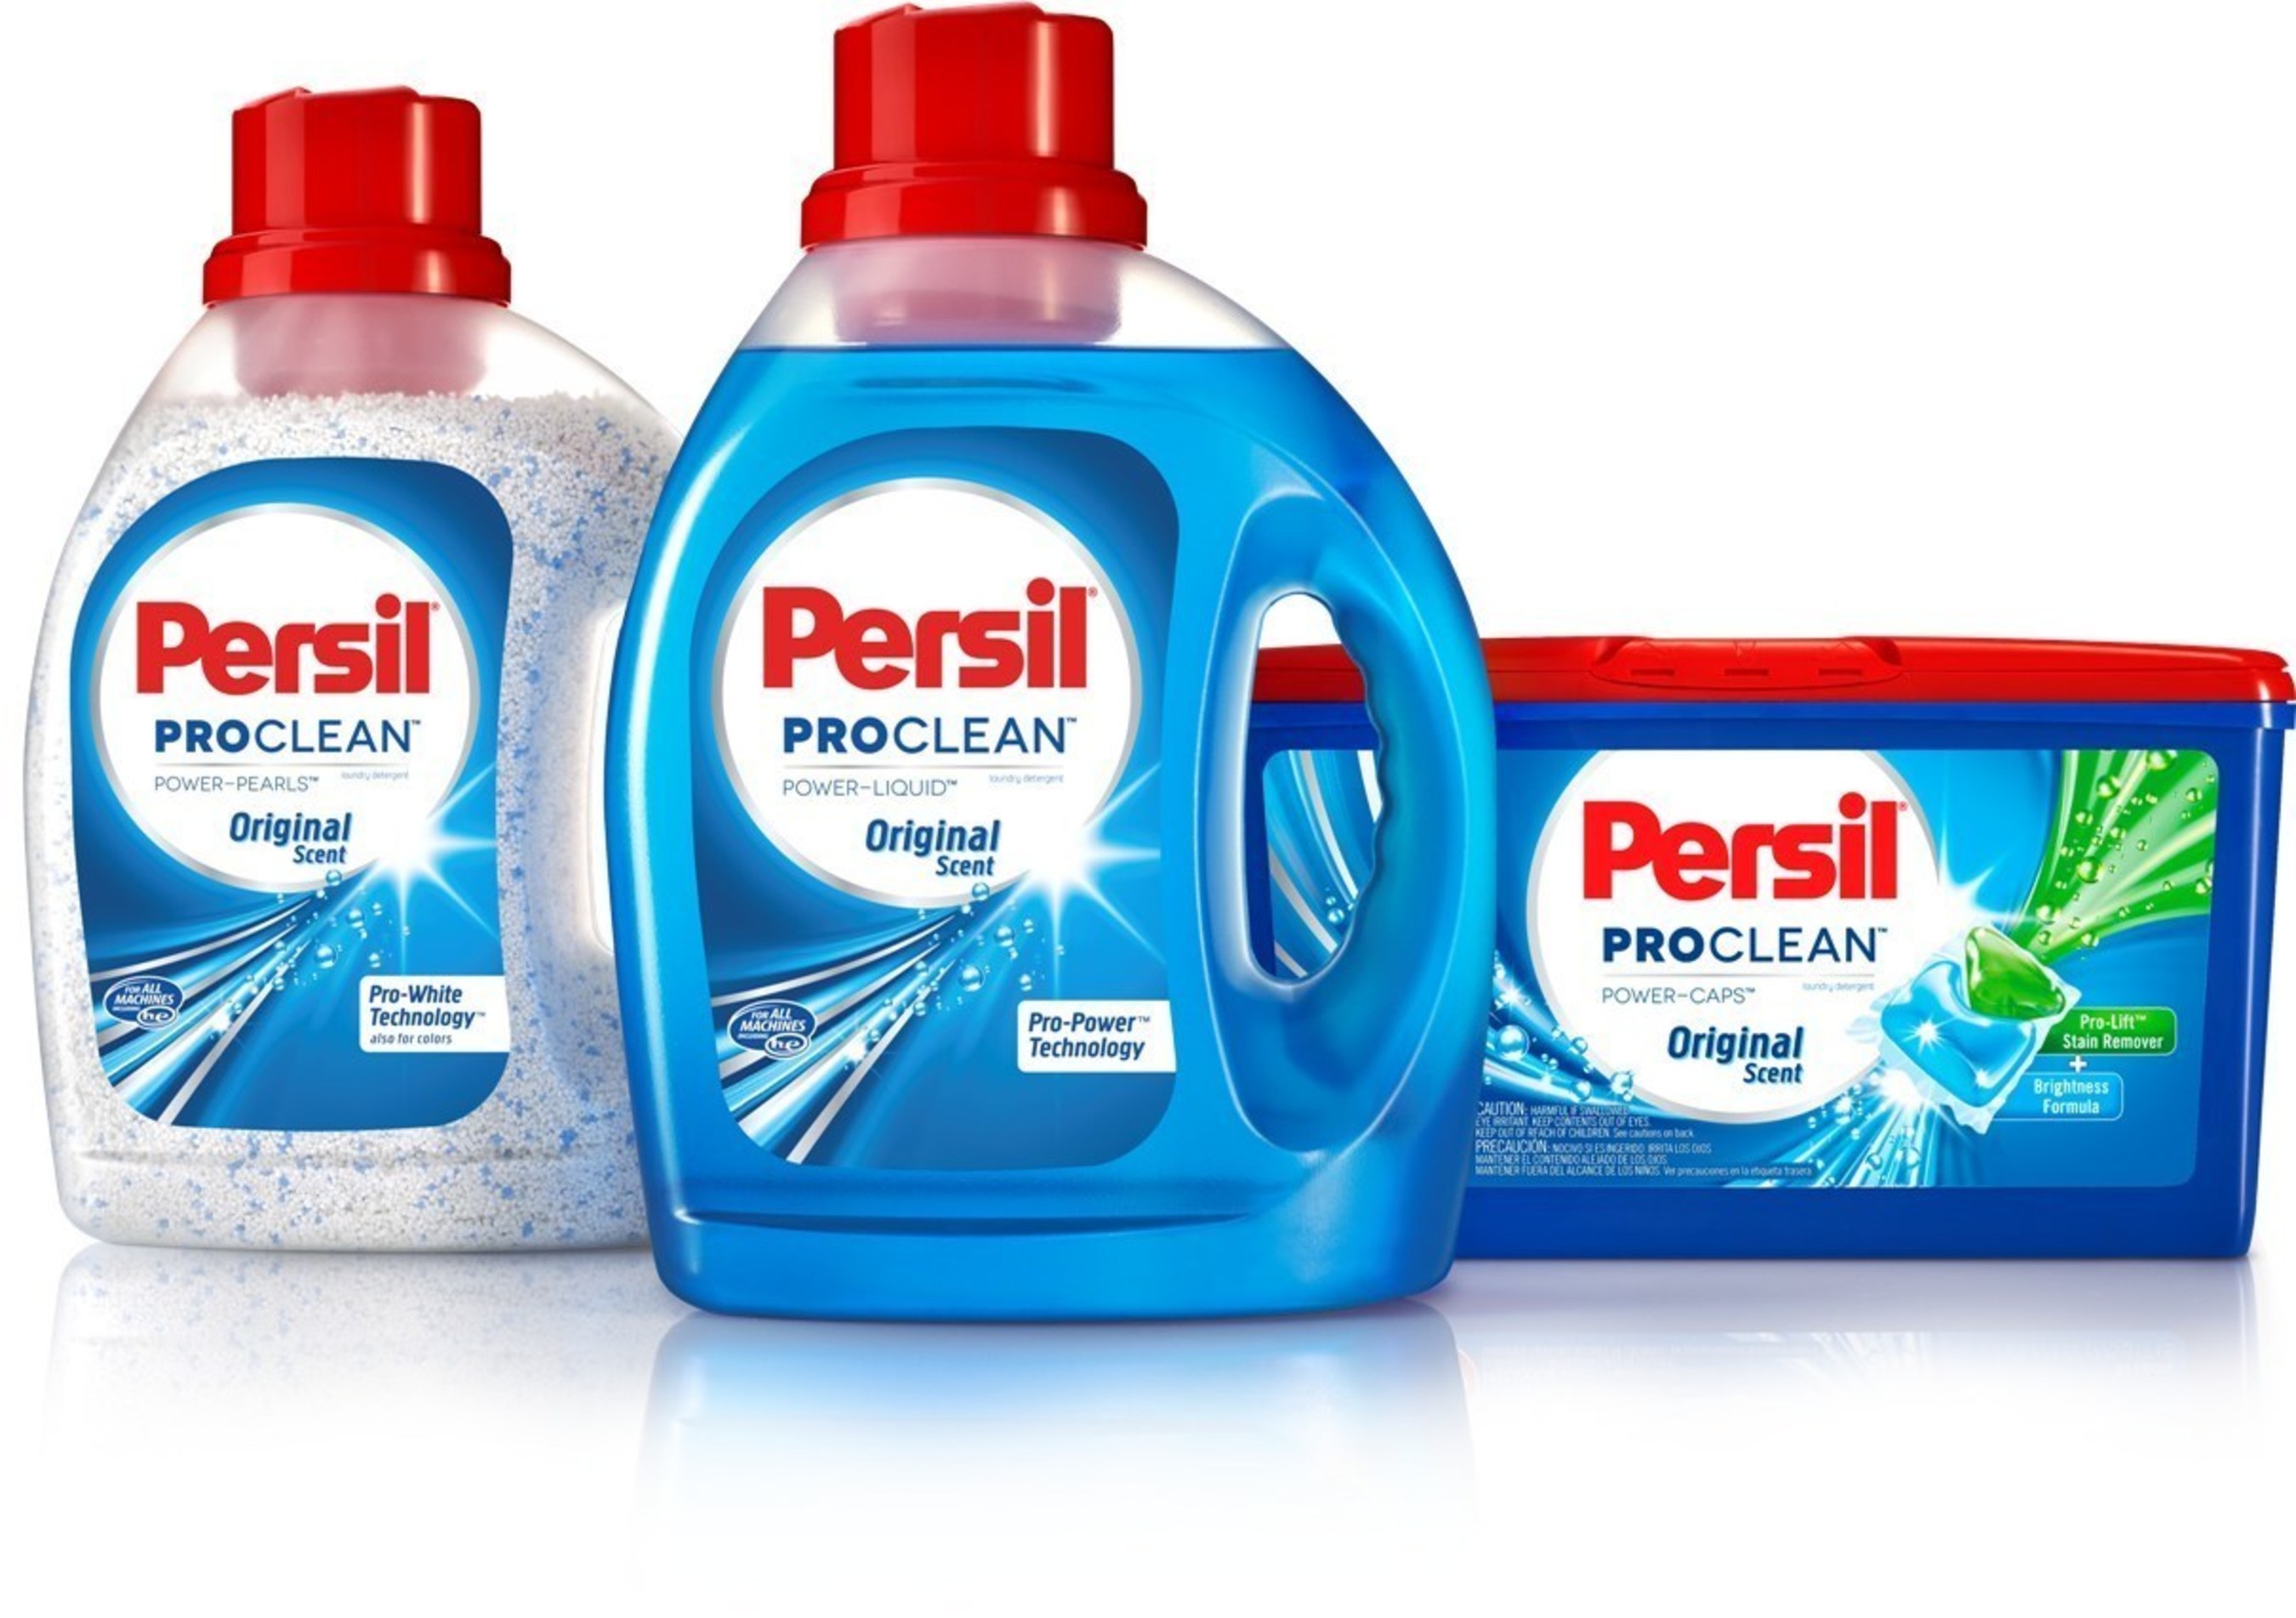 Persil ProClean Product Portfolio